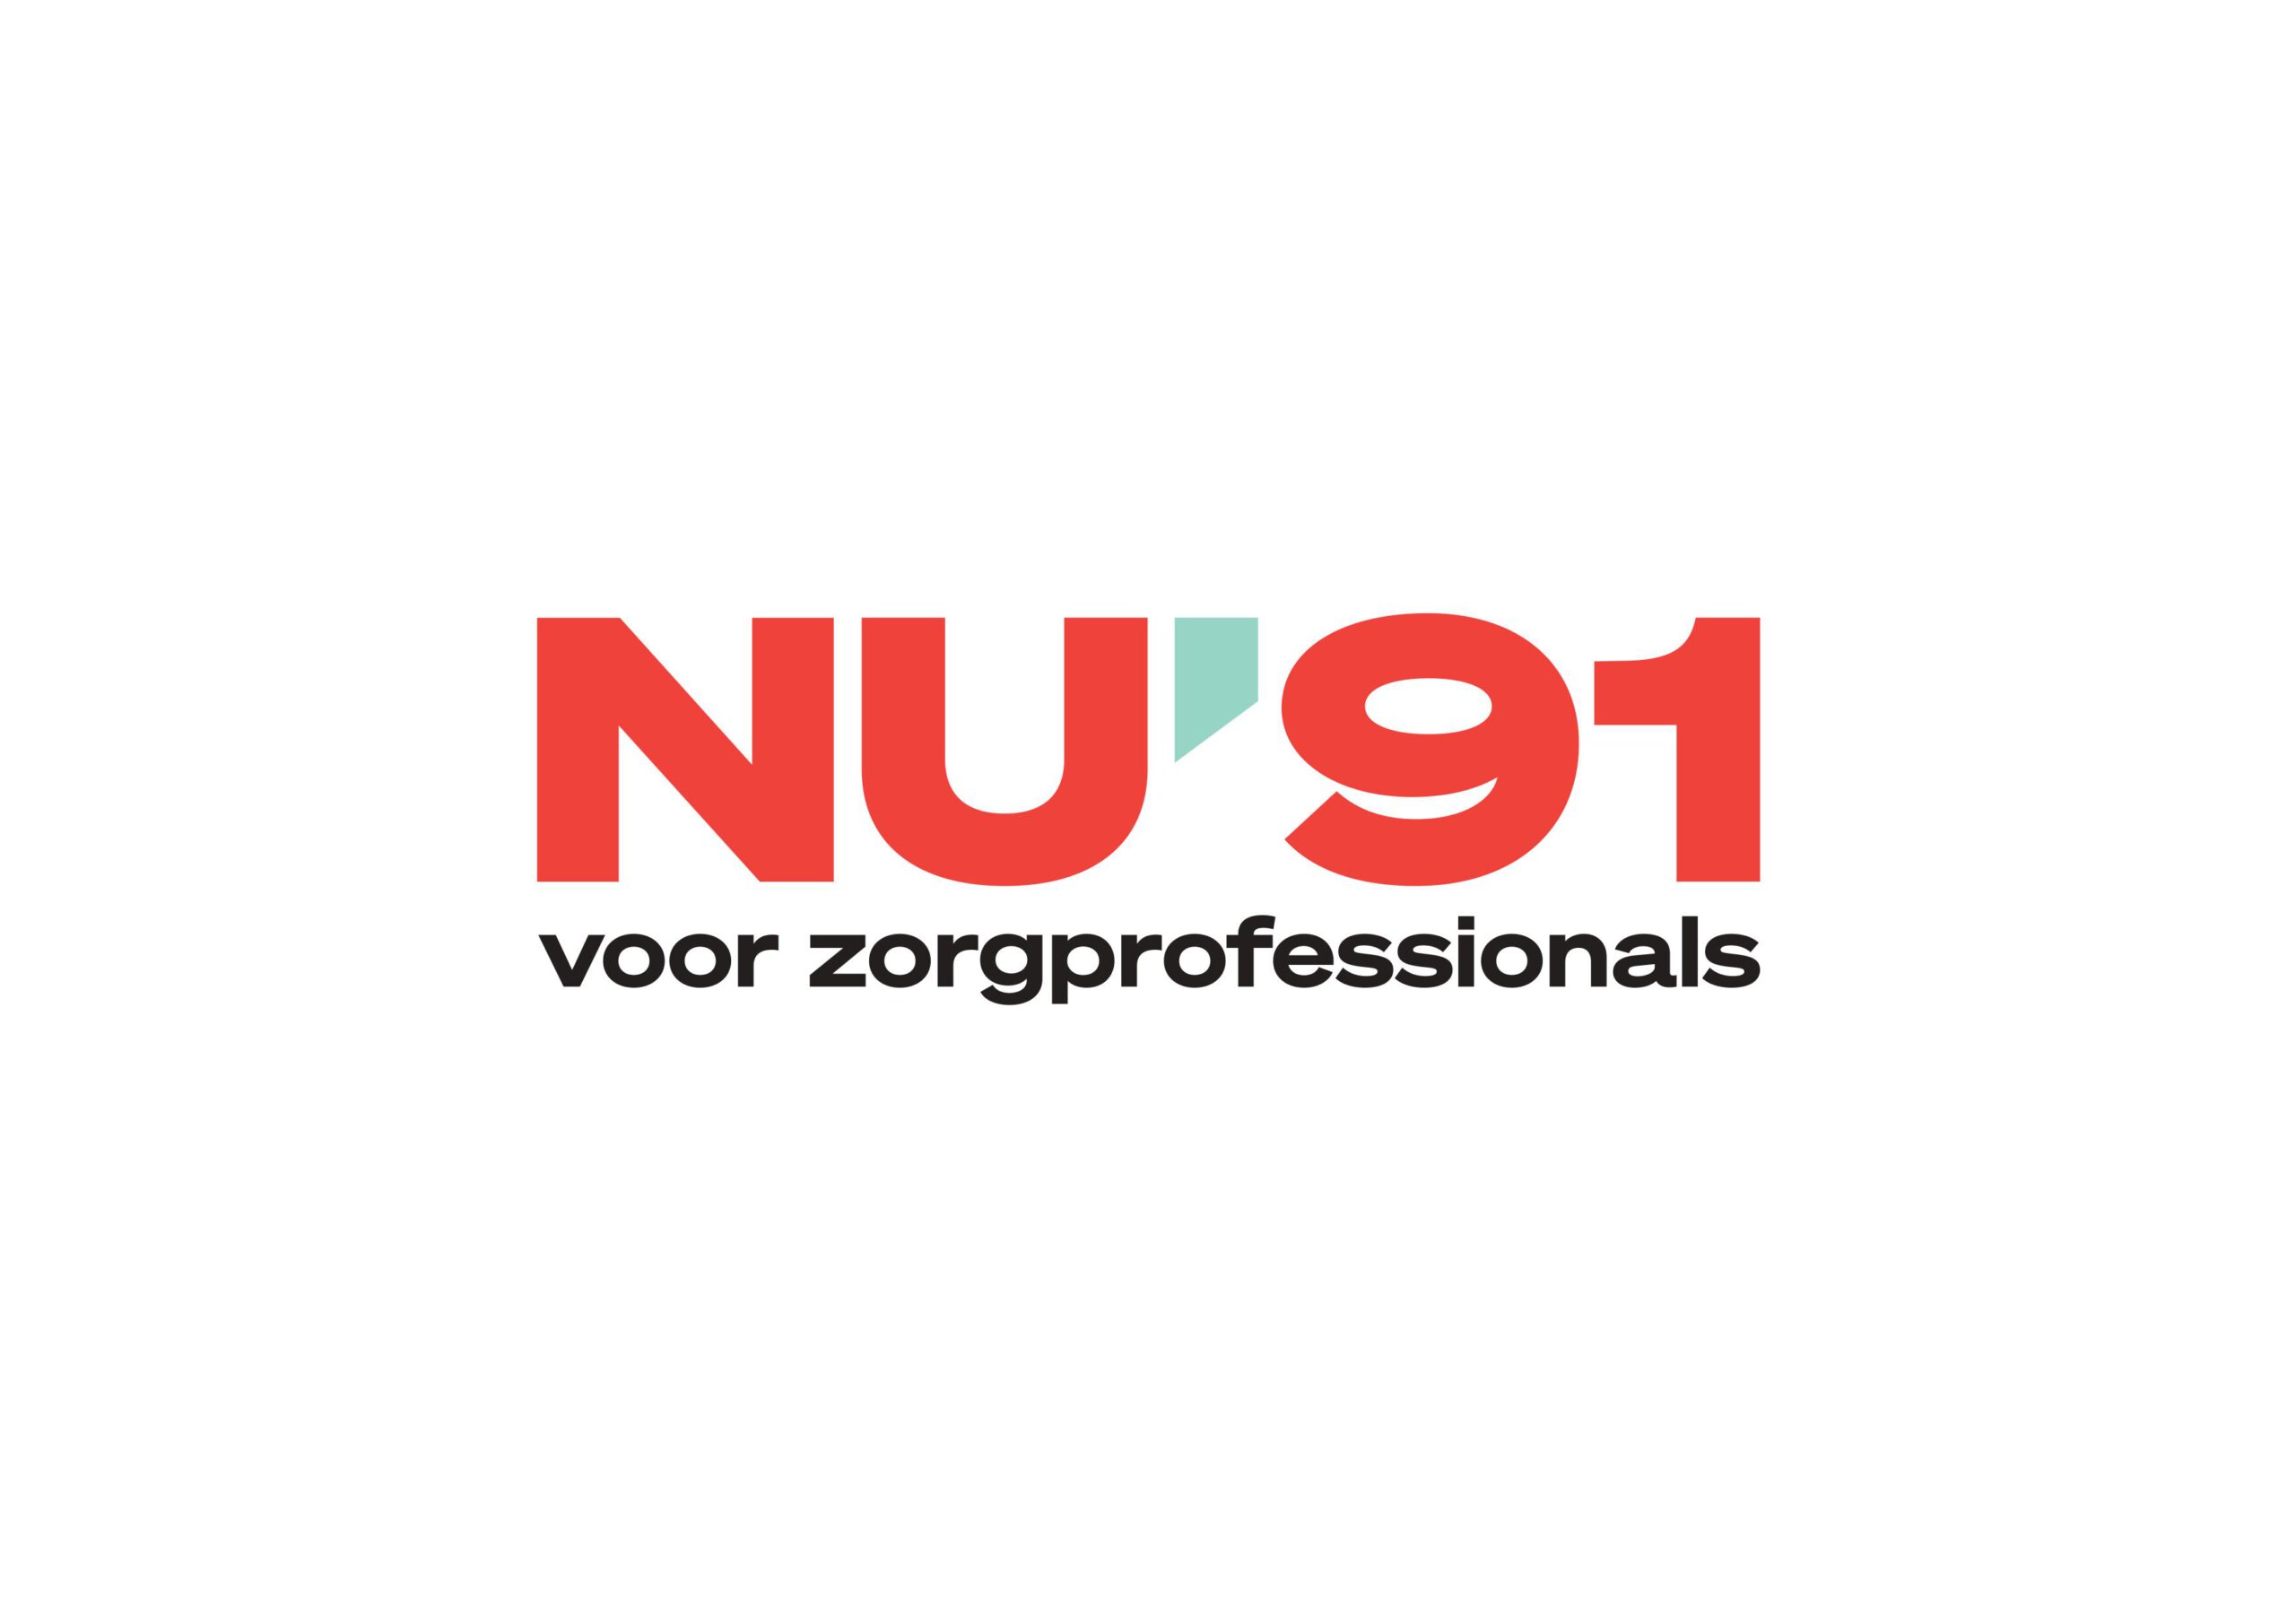 (c) Nu91.nl